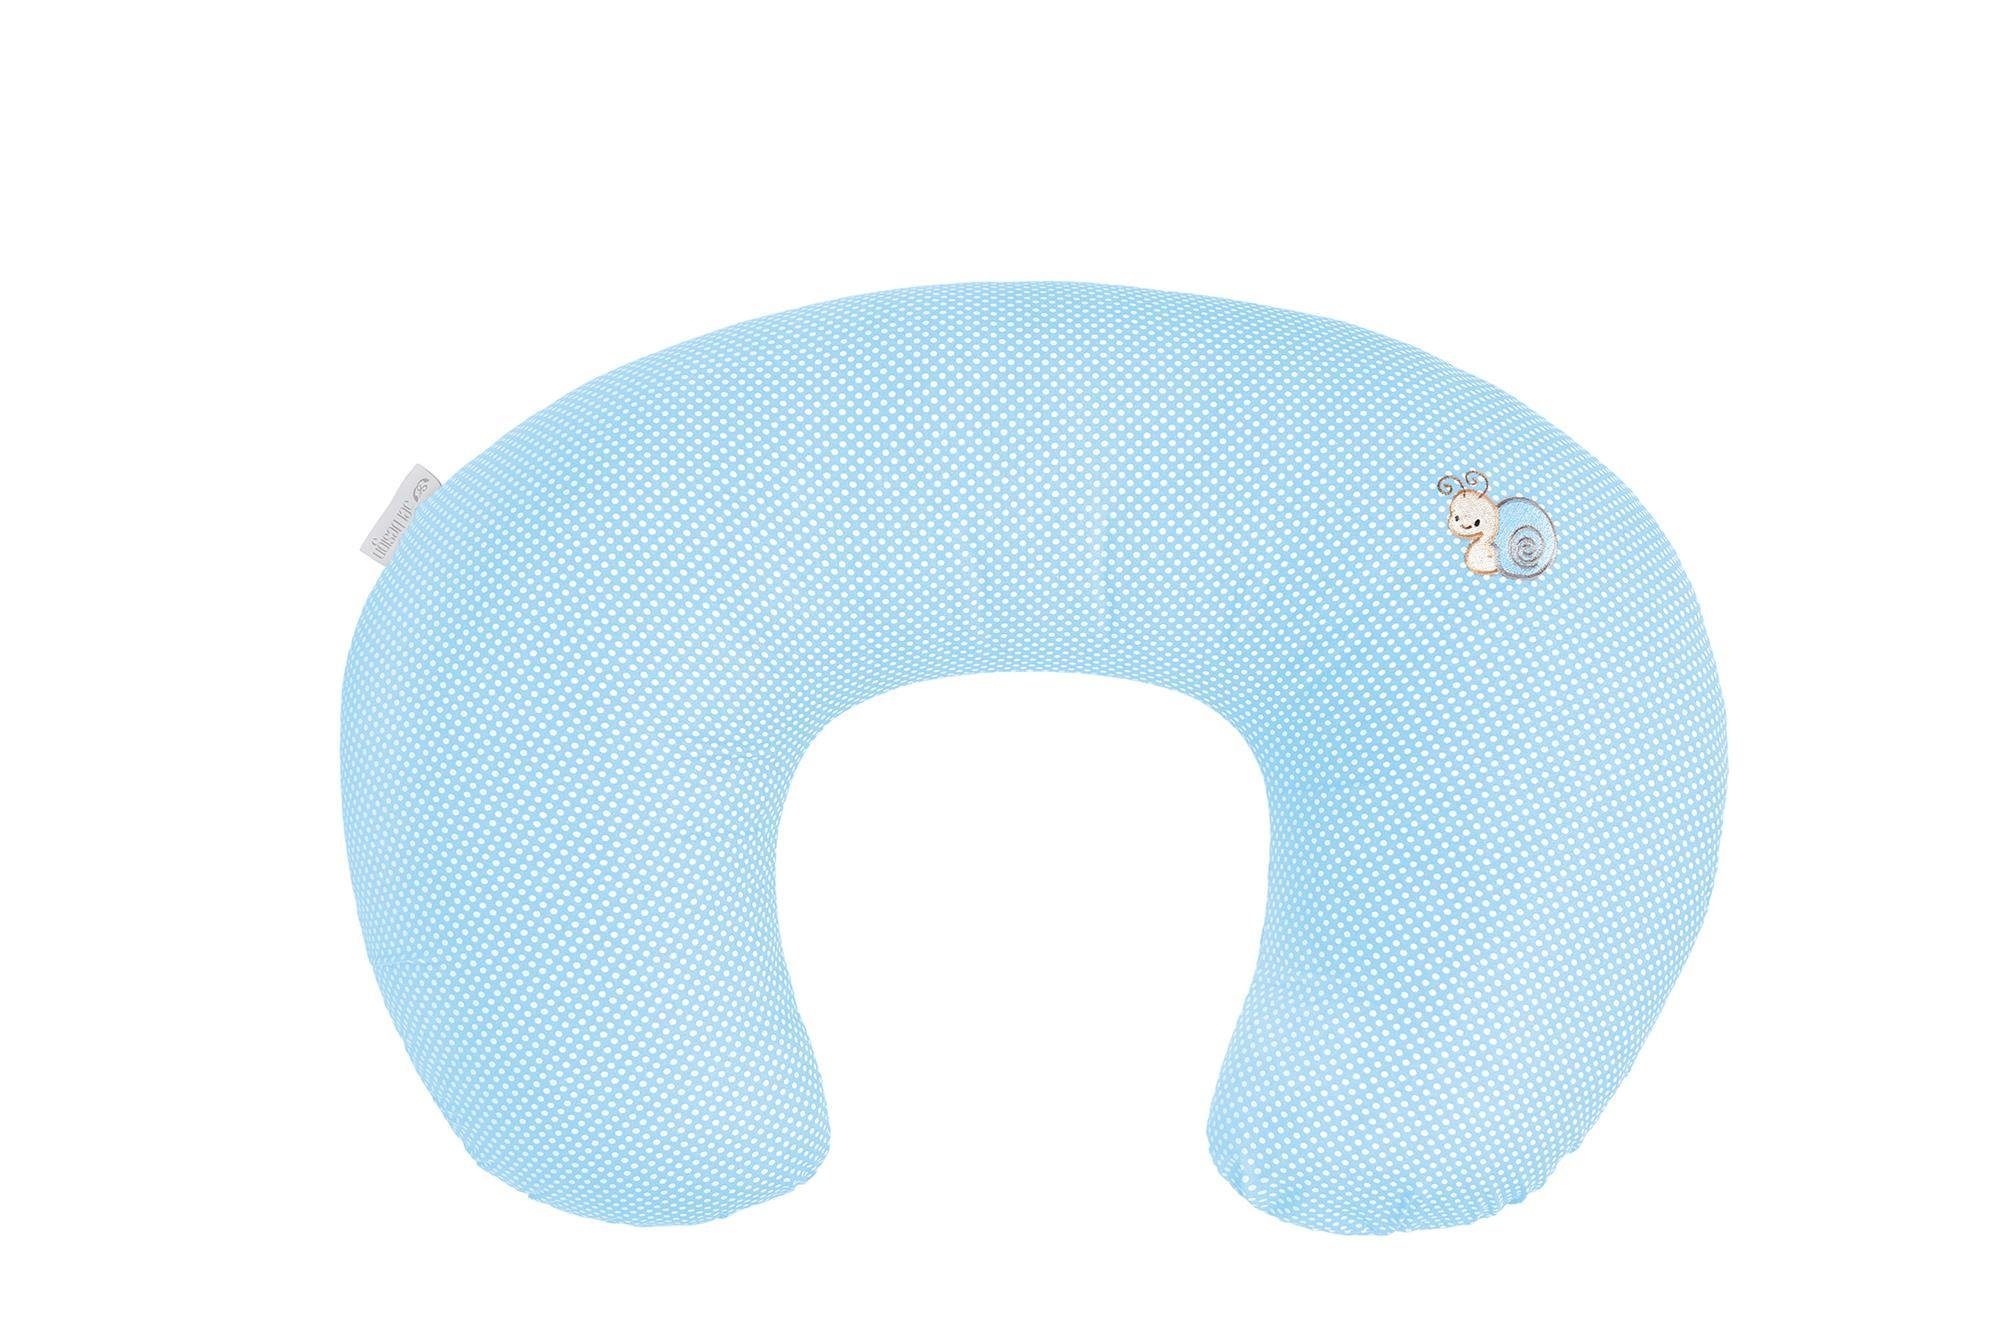 Stillhörnchen, klein Stillmond Baumwolle Bezug, SEI Bezug Stillkissen Stillkissen Design Schwangerschaftskissen mit 100% ozean-blau